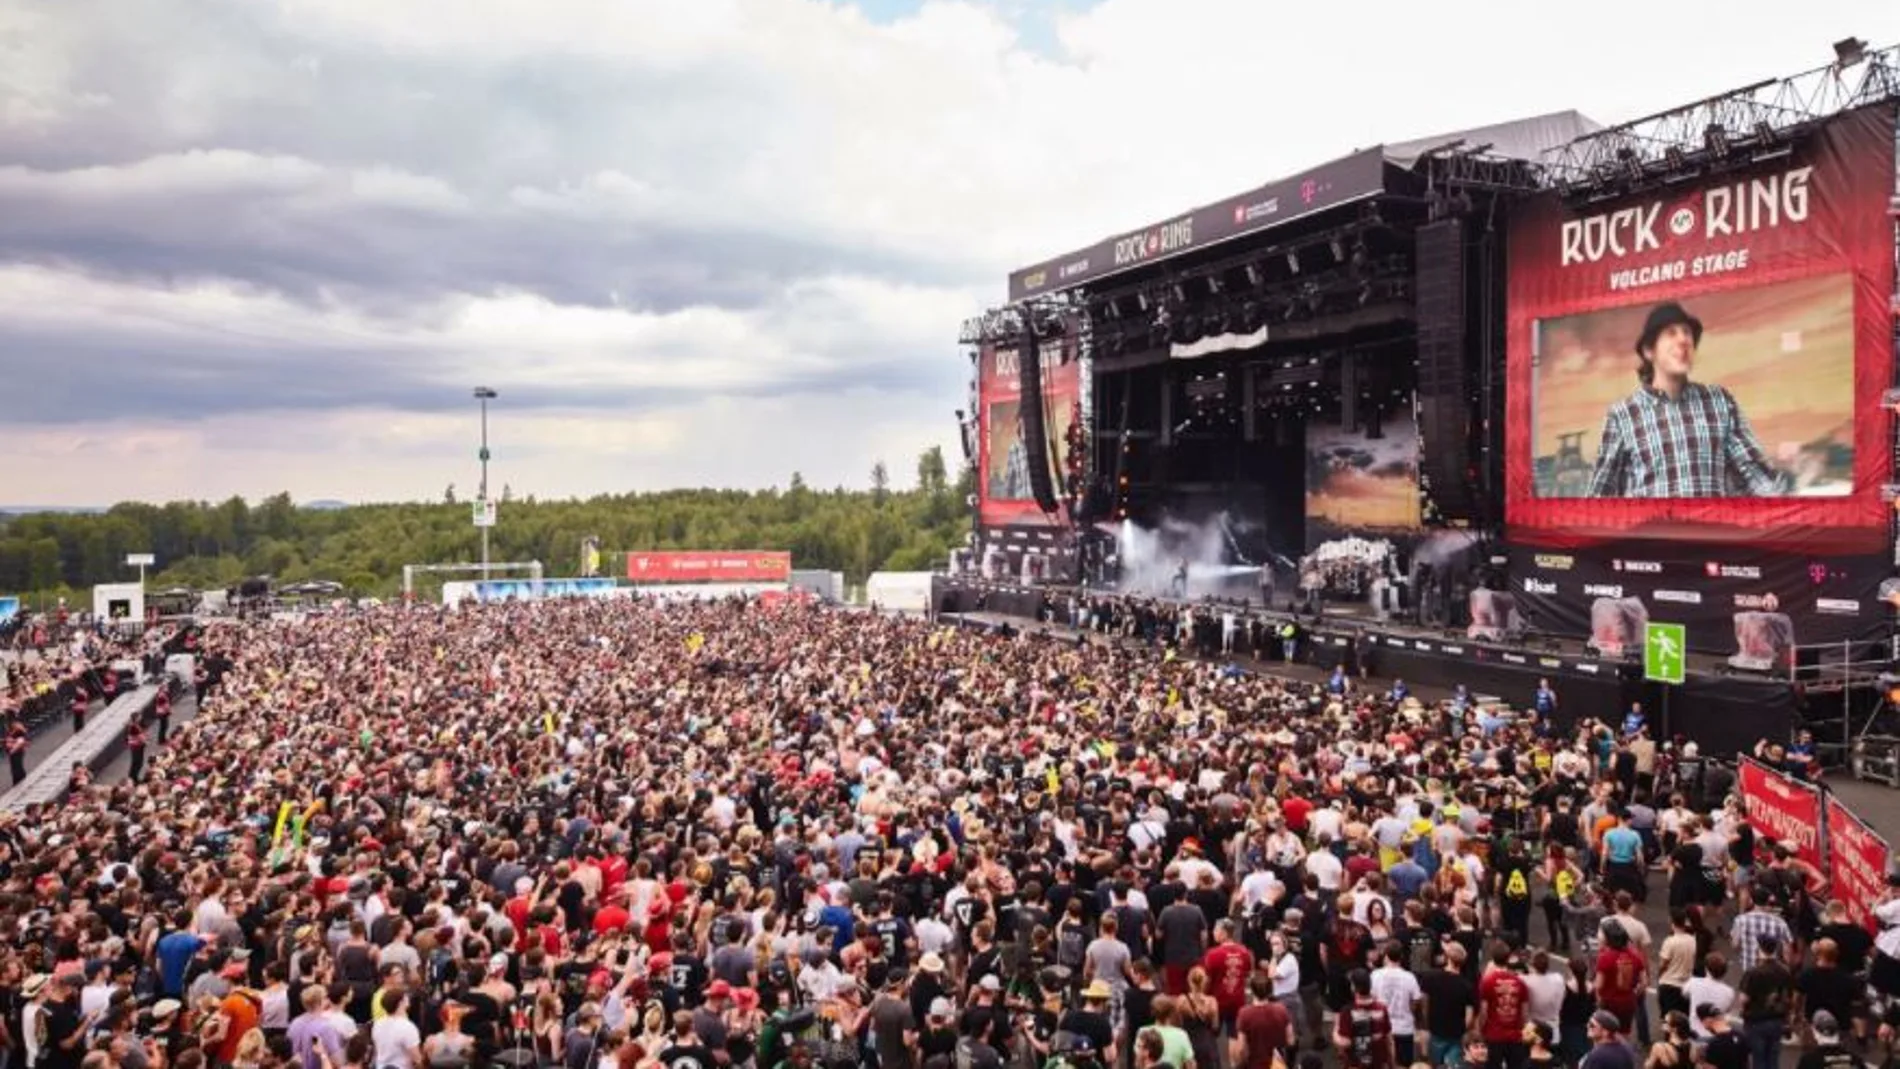 Vista de los asistentes frente a un escenario del festival 'Rock am Ring' en Nürburg (Alemania)